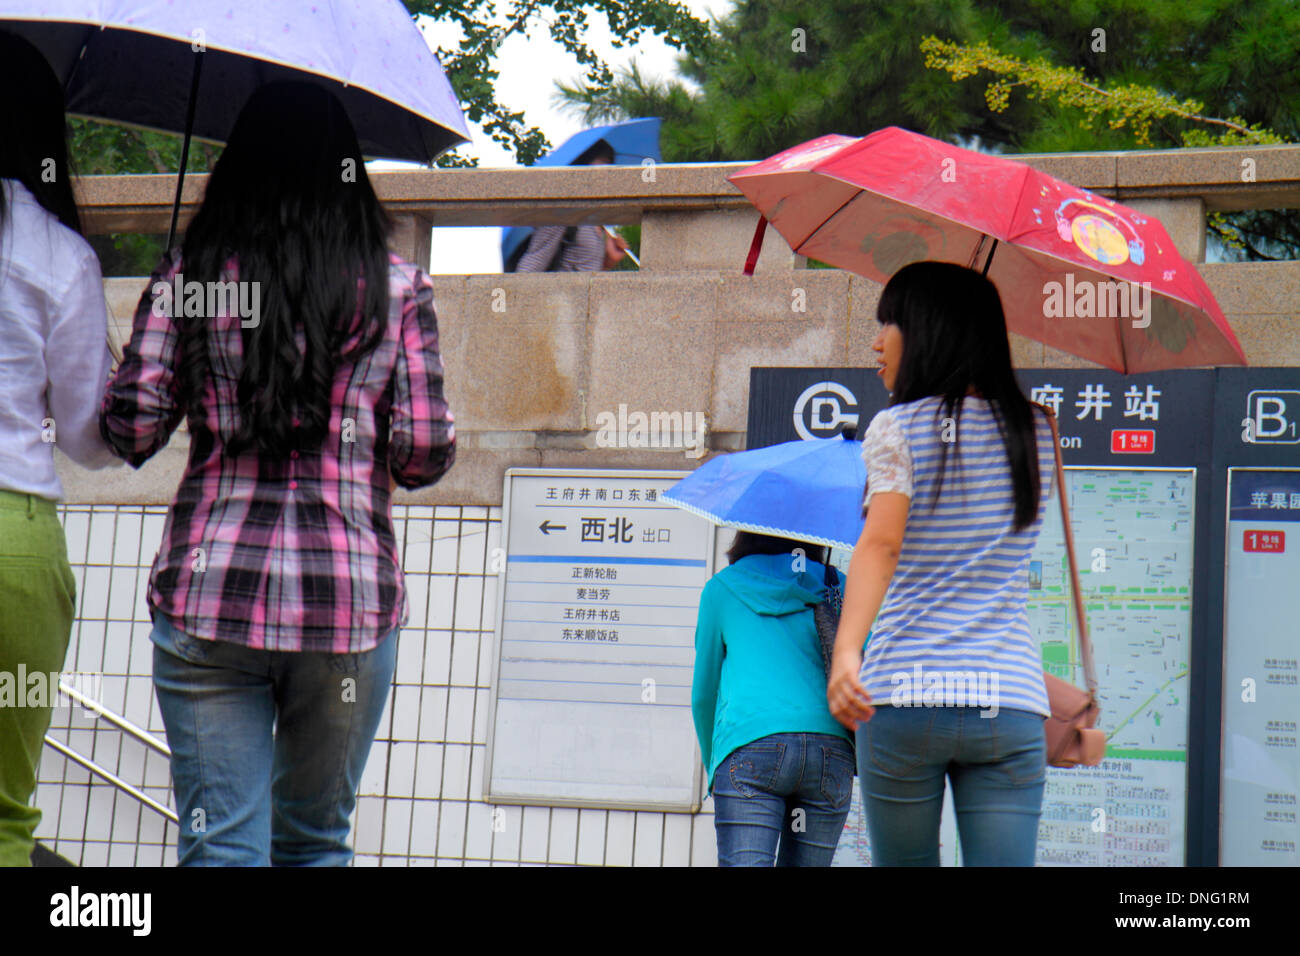 Beijing China, Asien, Chinesisch, Orientalisch, Wangfujing U-Bahn-Station, Linie 1, öffentliche Verkehrsmittel, Asiaten, Erwachsene, Erwachsene, Frau Frauen weibliche Dame, Regenschirm, Stockfoto